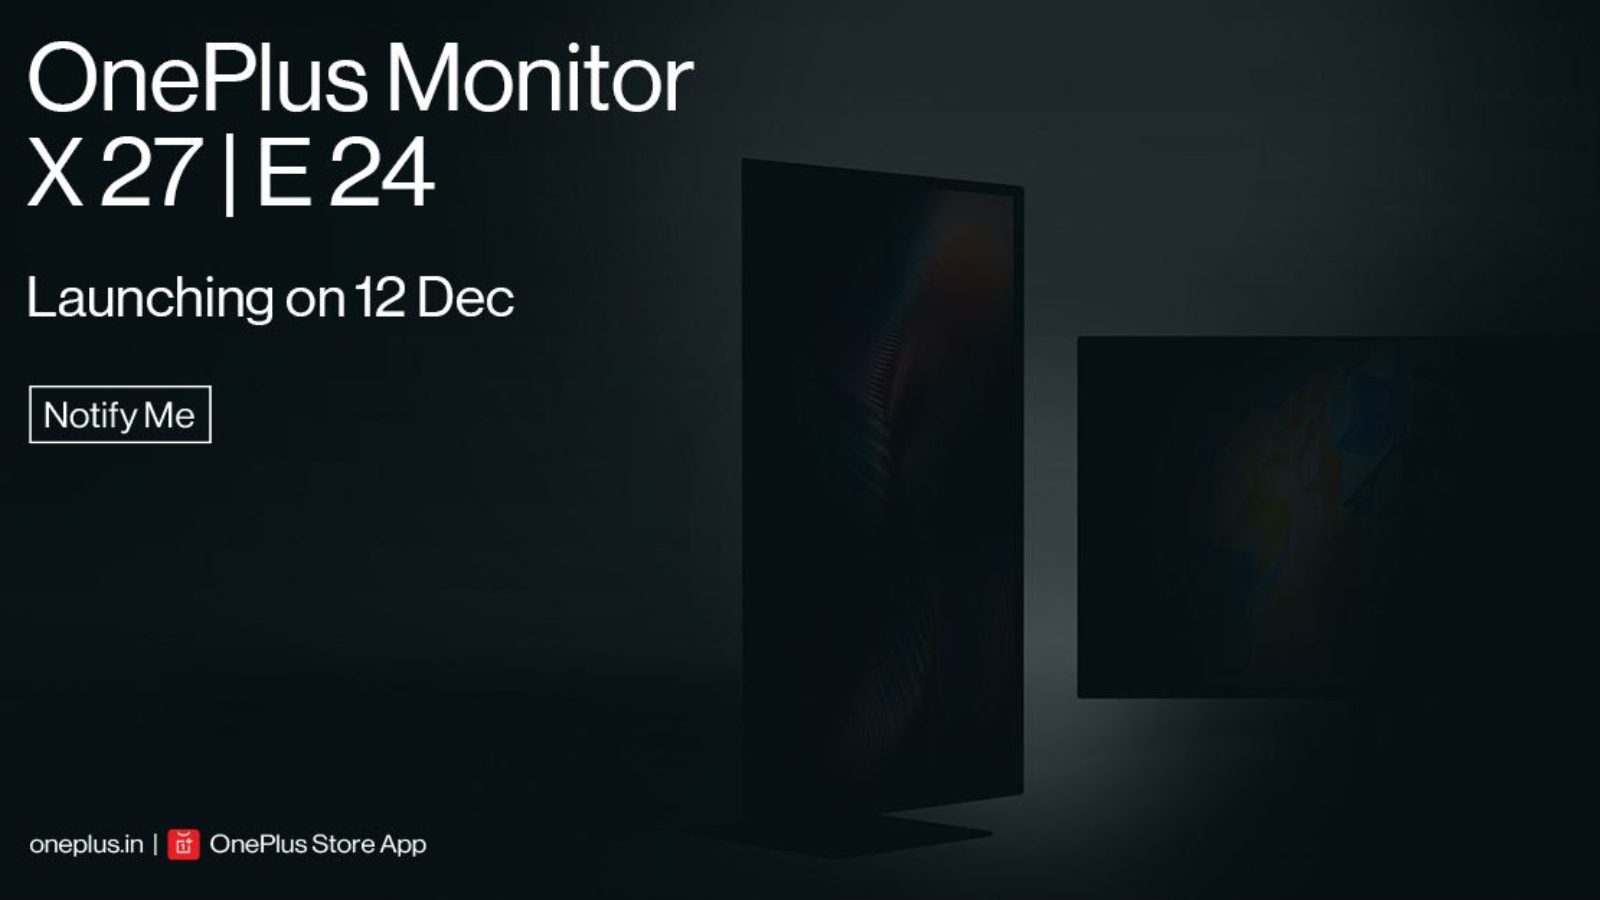 OnePlus входит в сегмент мониторов, чтобы анонсировать модели премиум-класса в Индии 12 декабря